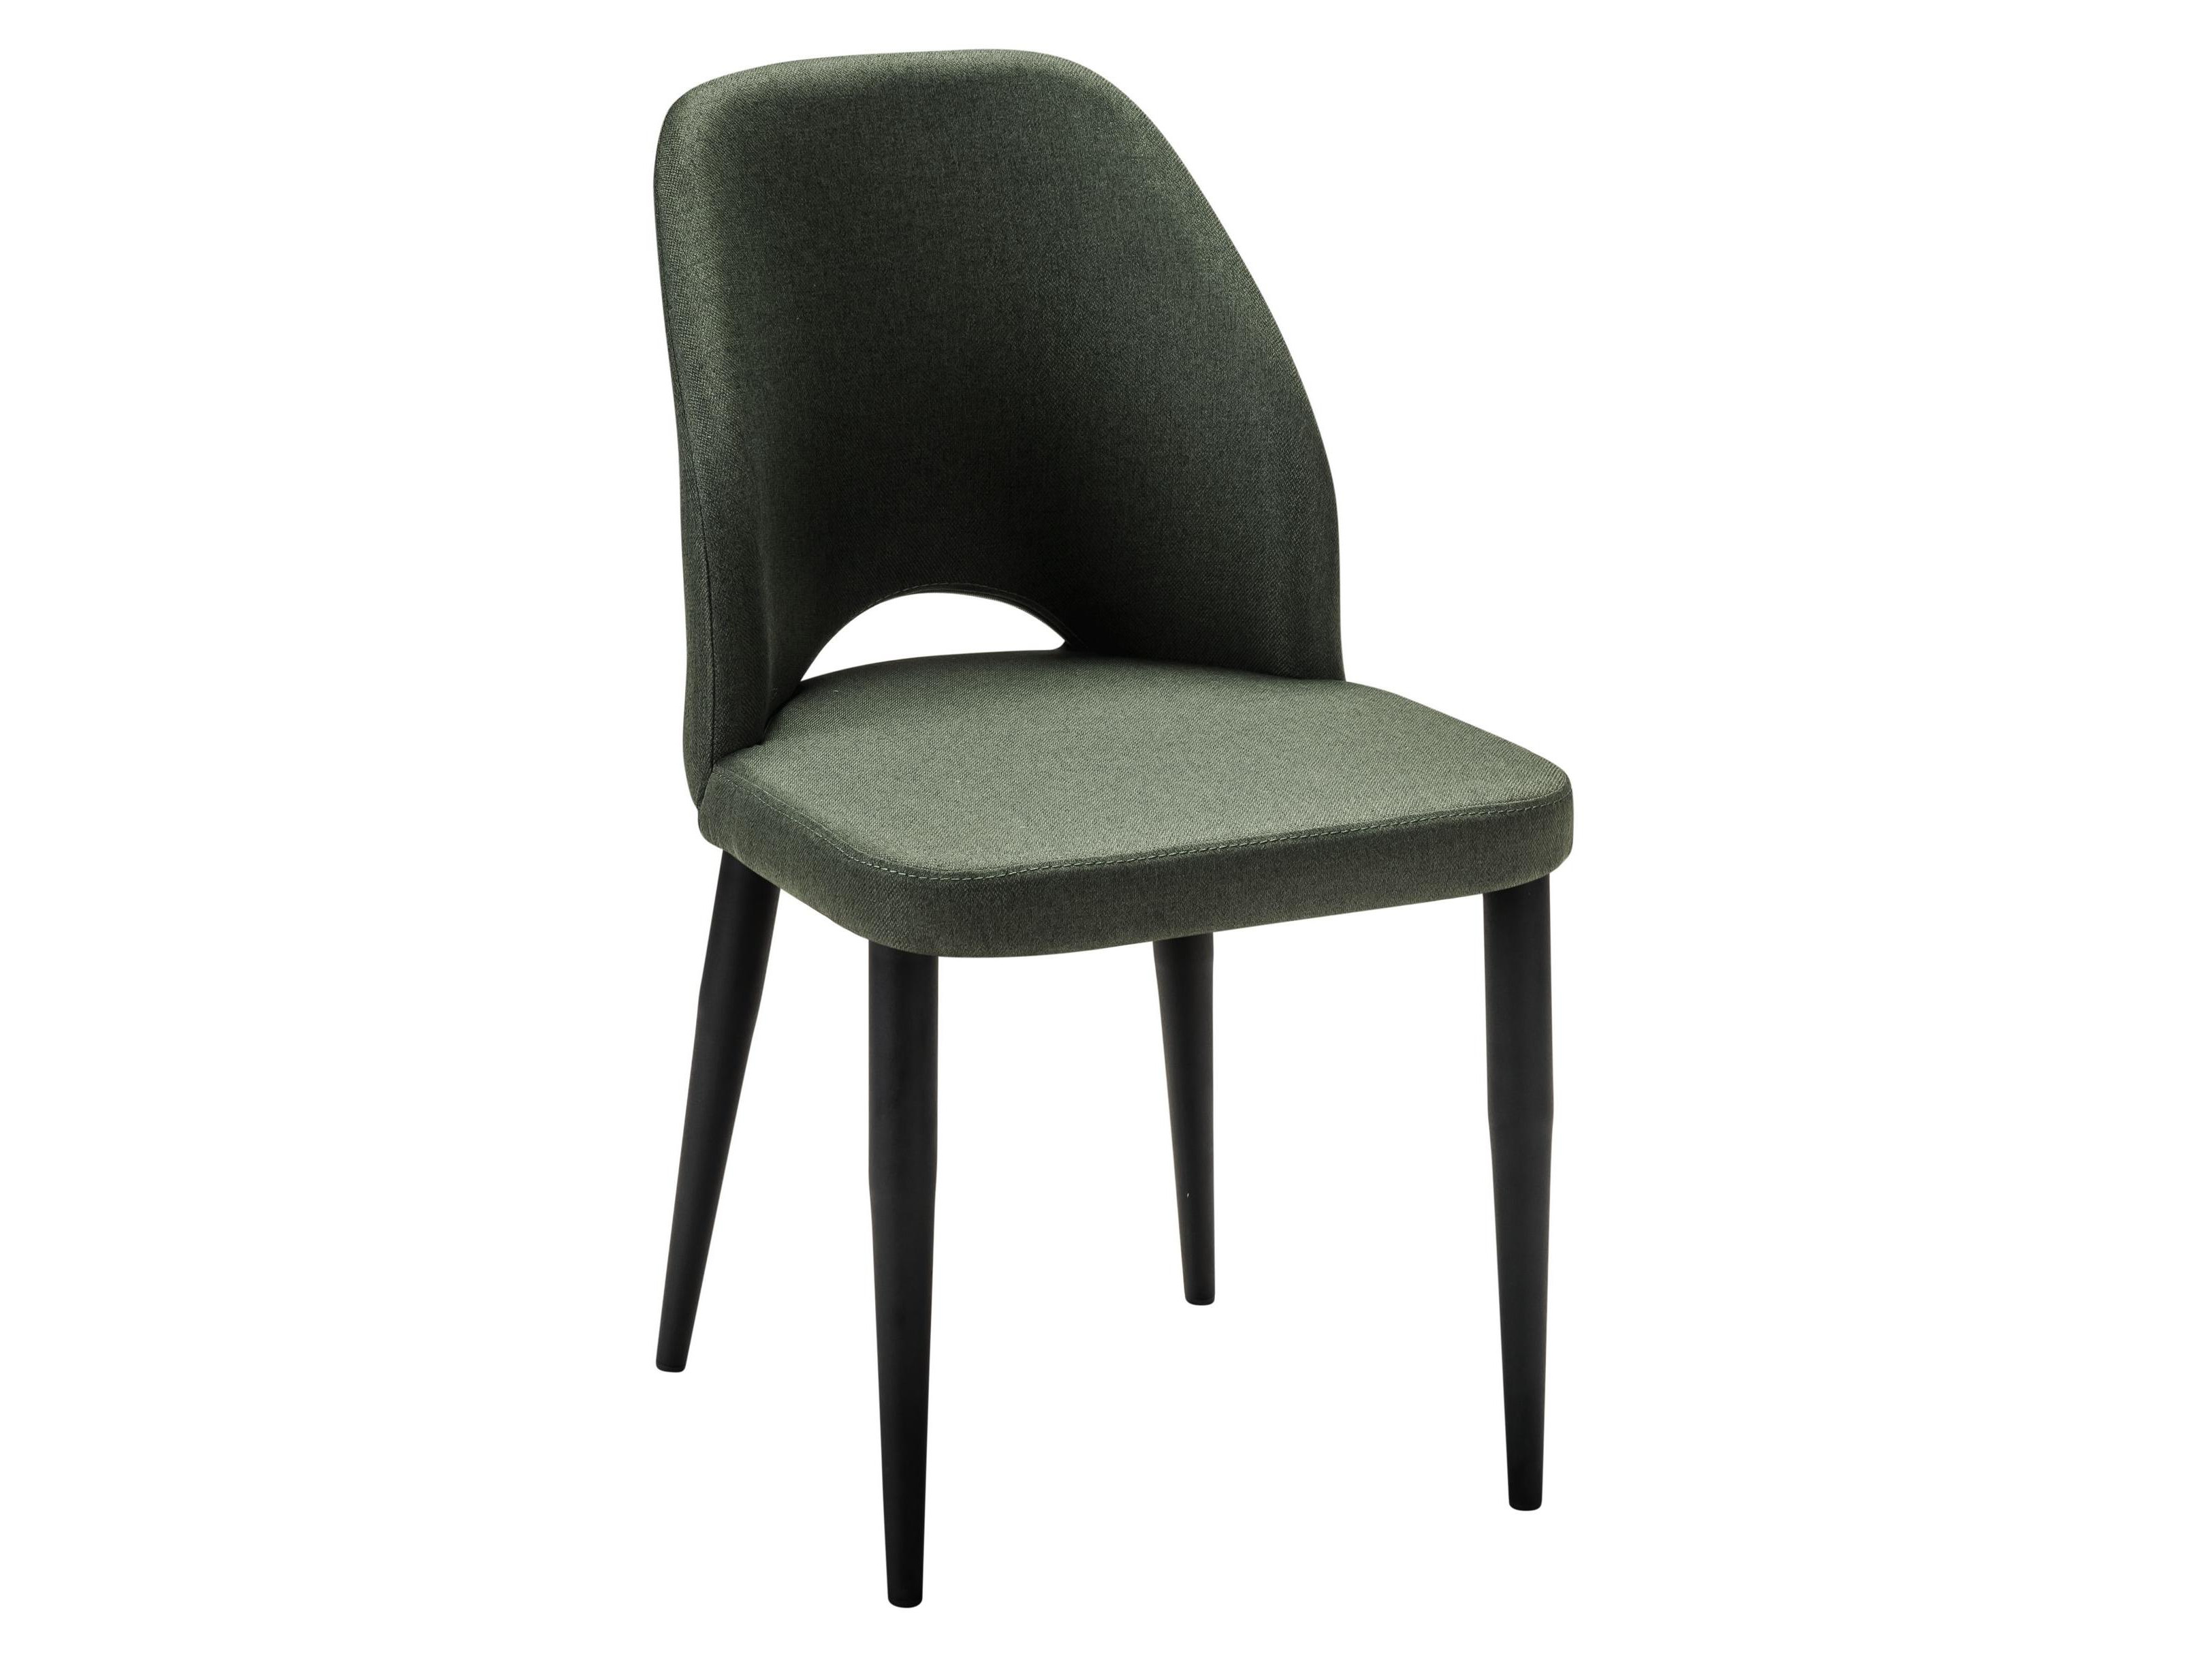 Стул Ledger темно-зеленый/черный Зеленый, Металл стул ledger фист эко чёрн зеленый металл